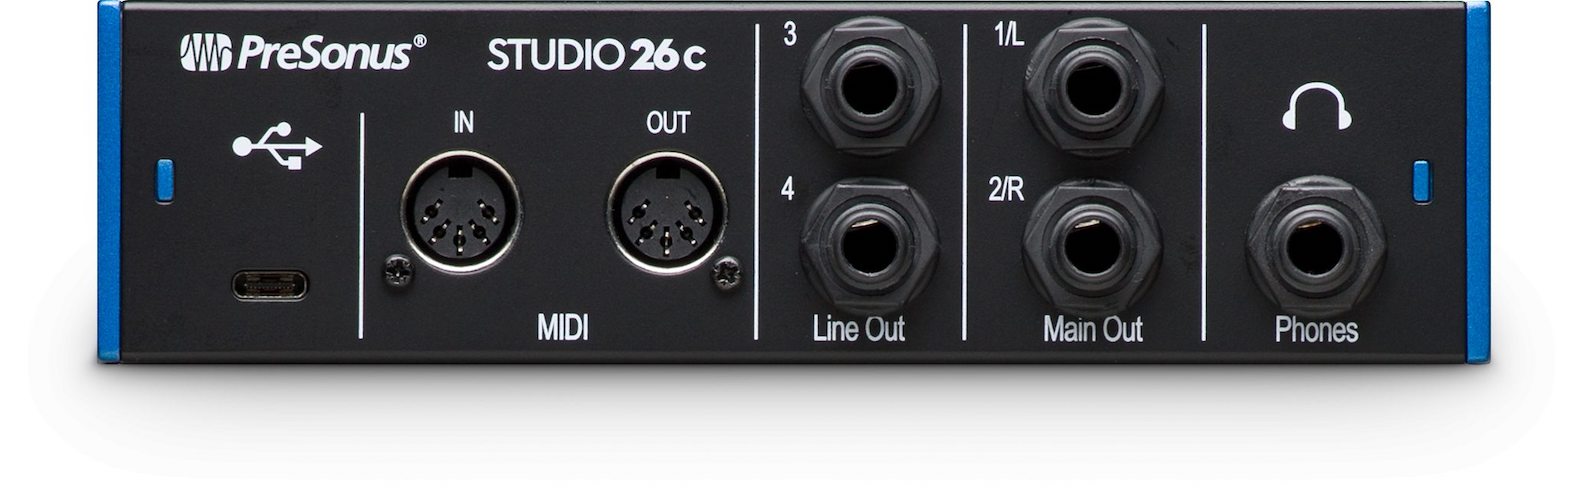 Presonus Studio 26c Audio Interface